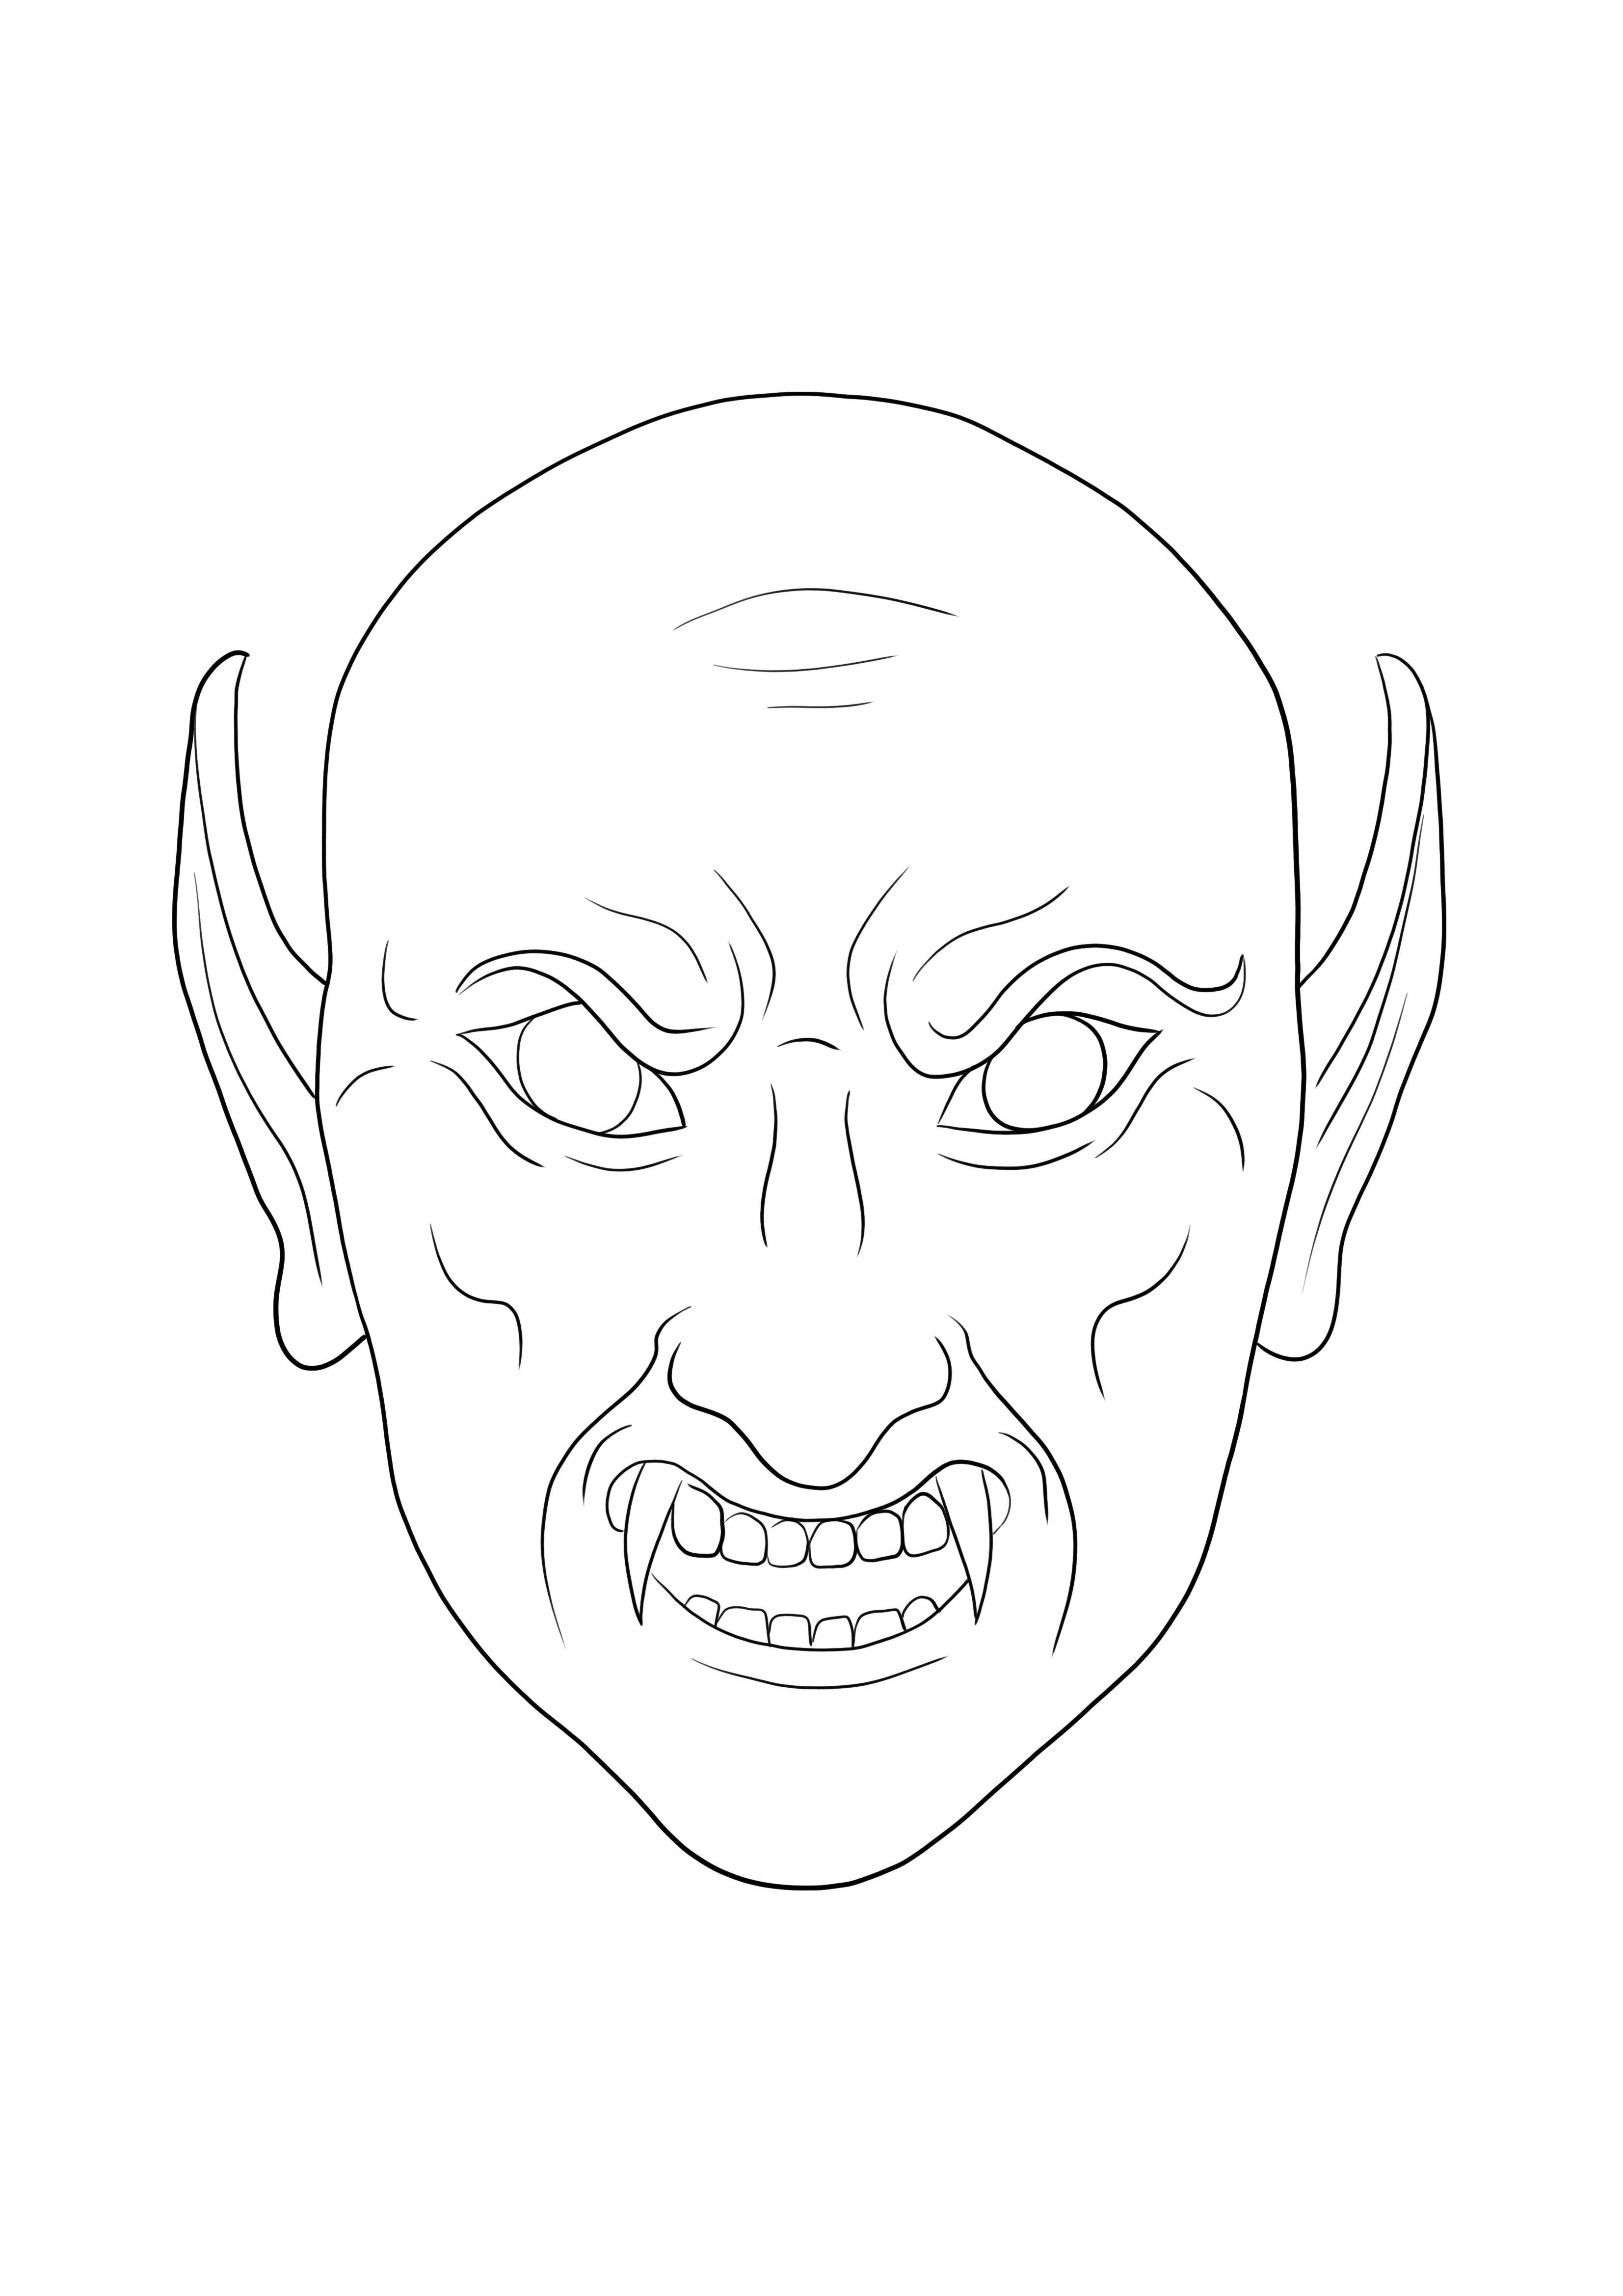 Máscara de Vampiro - Desenhos para pintar